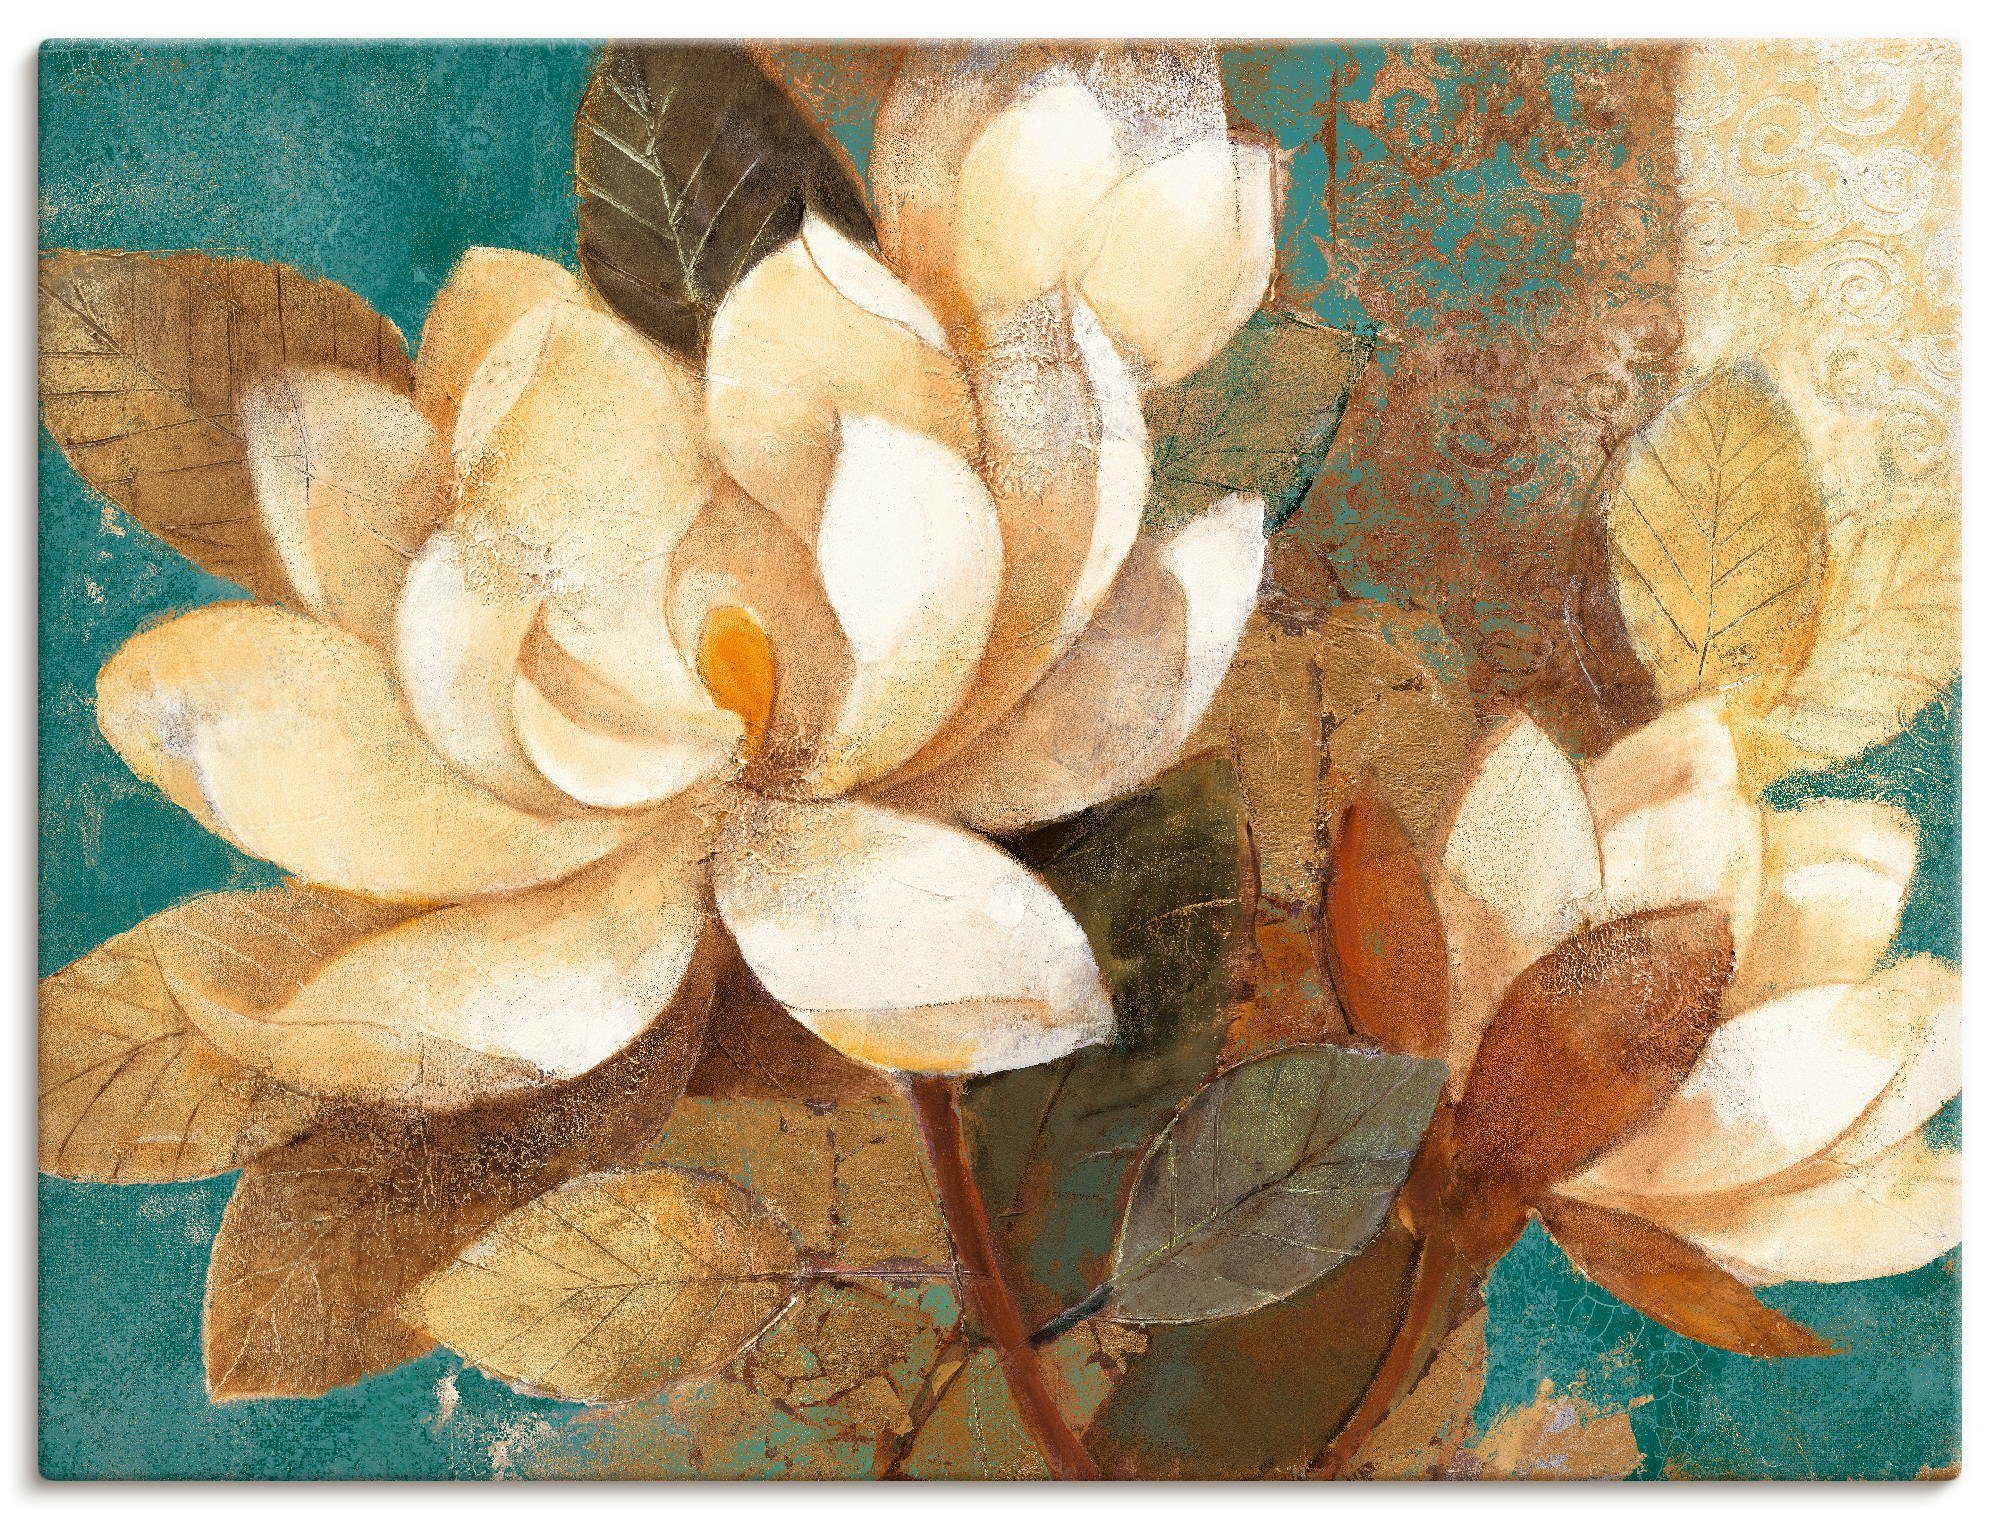 Artland Artprint Turquoise magnolia's in vele afmetingen & productsoorten -artprint op linnen, poster, muursticker / wandfolie ook geschikt voor de badkamer (1 stuk)